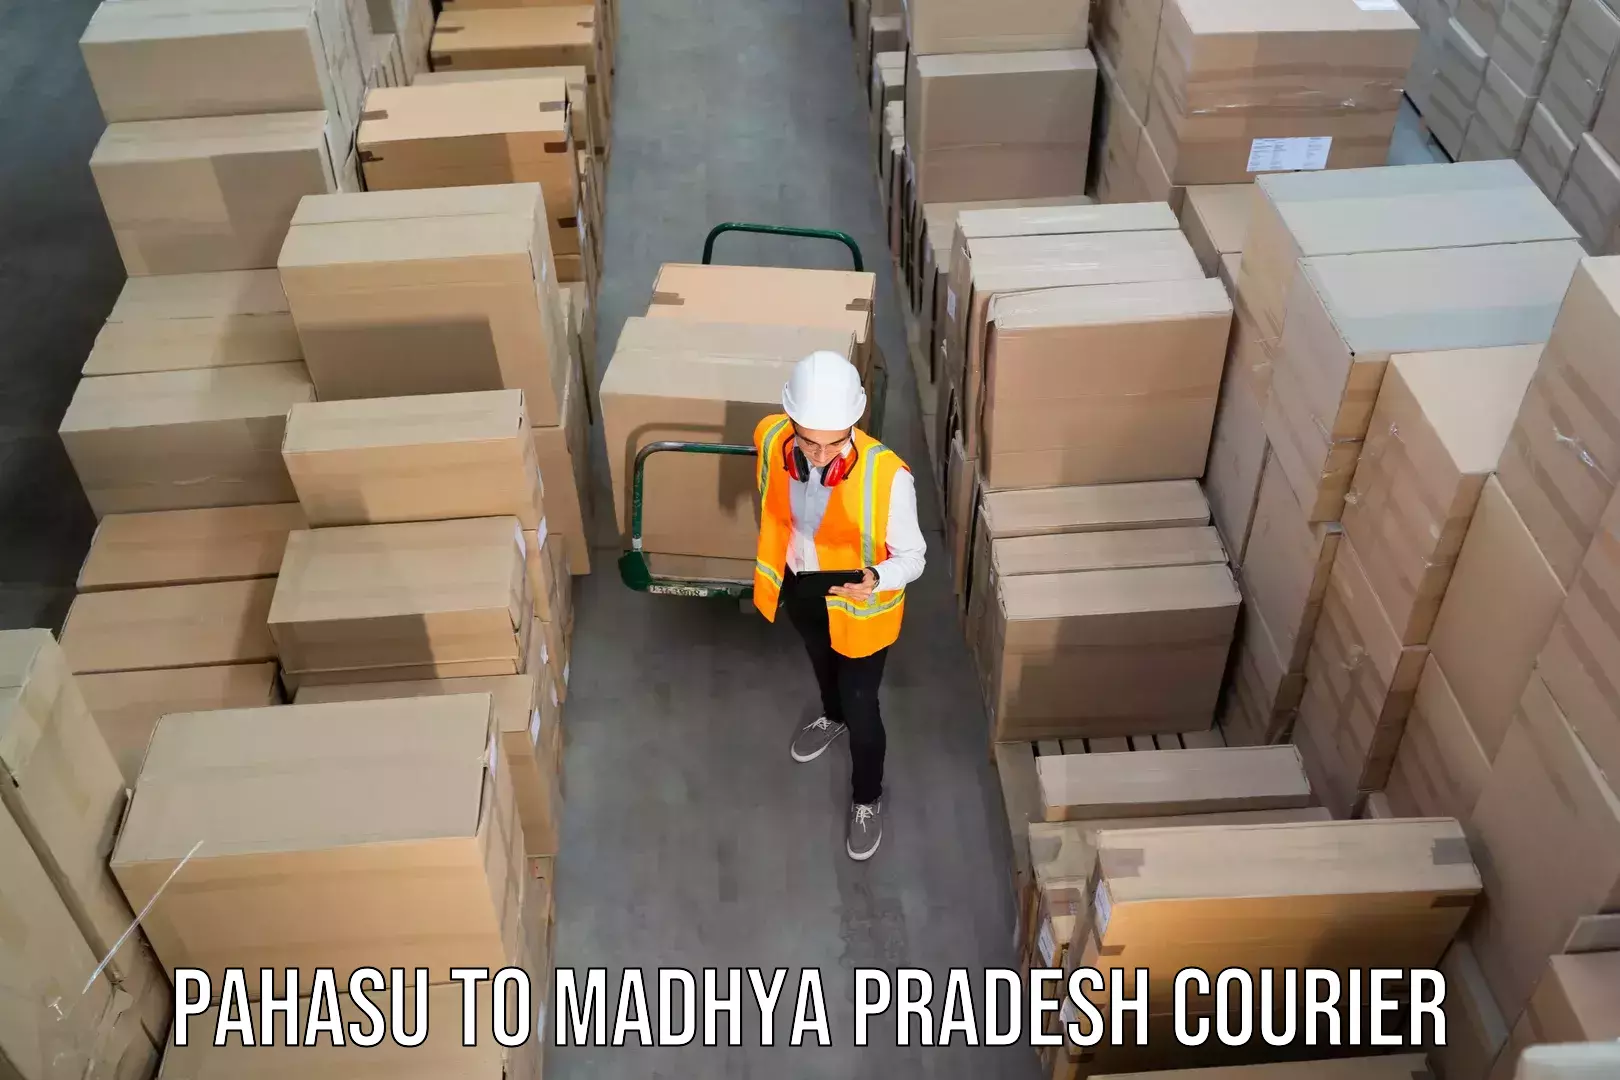 24-hour courier service Pahasu to Garh Rewa